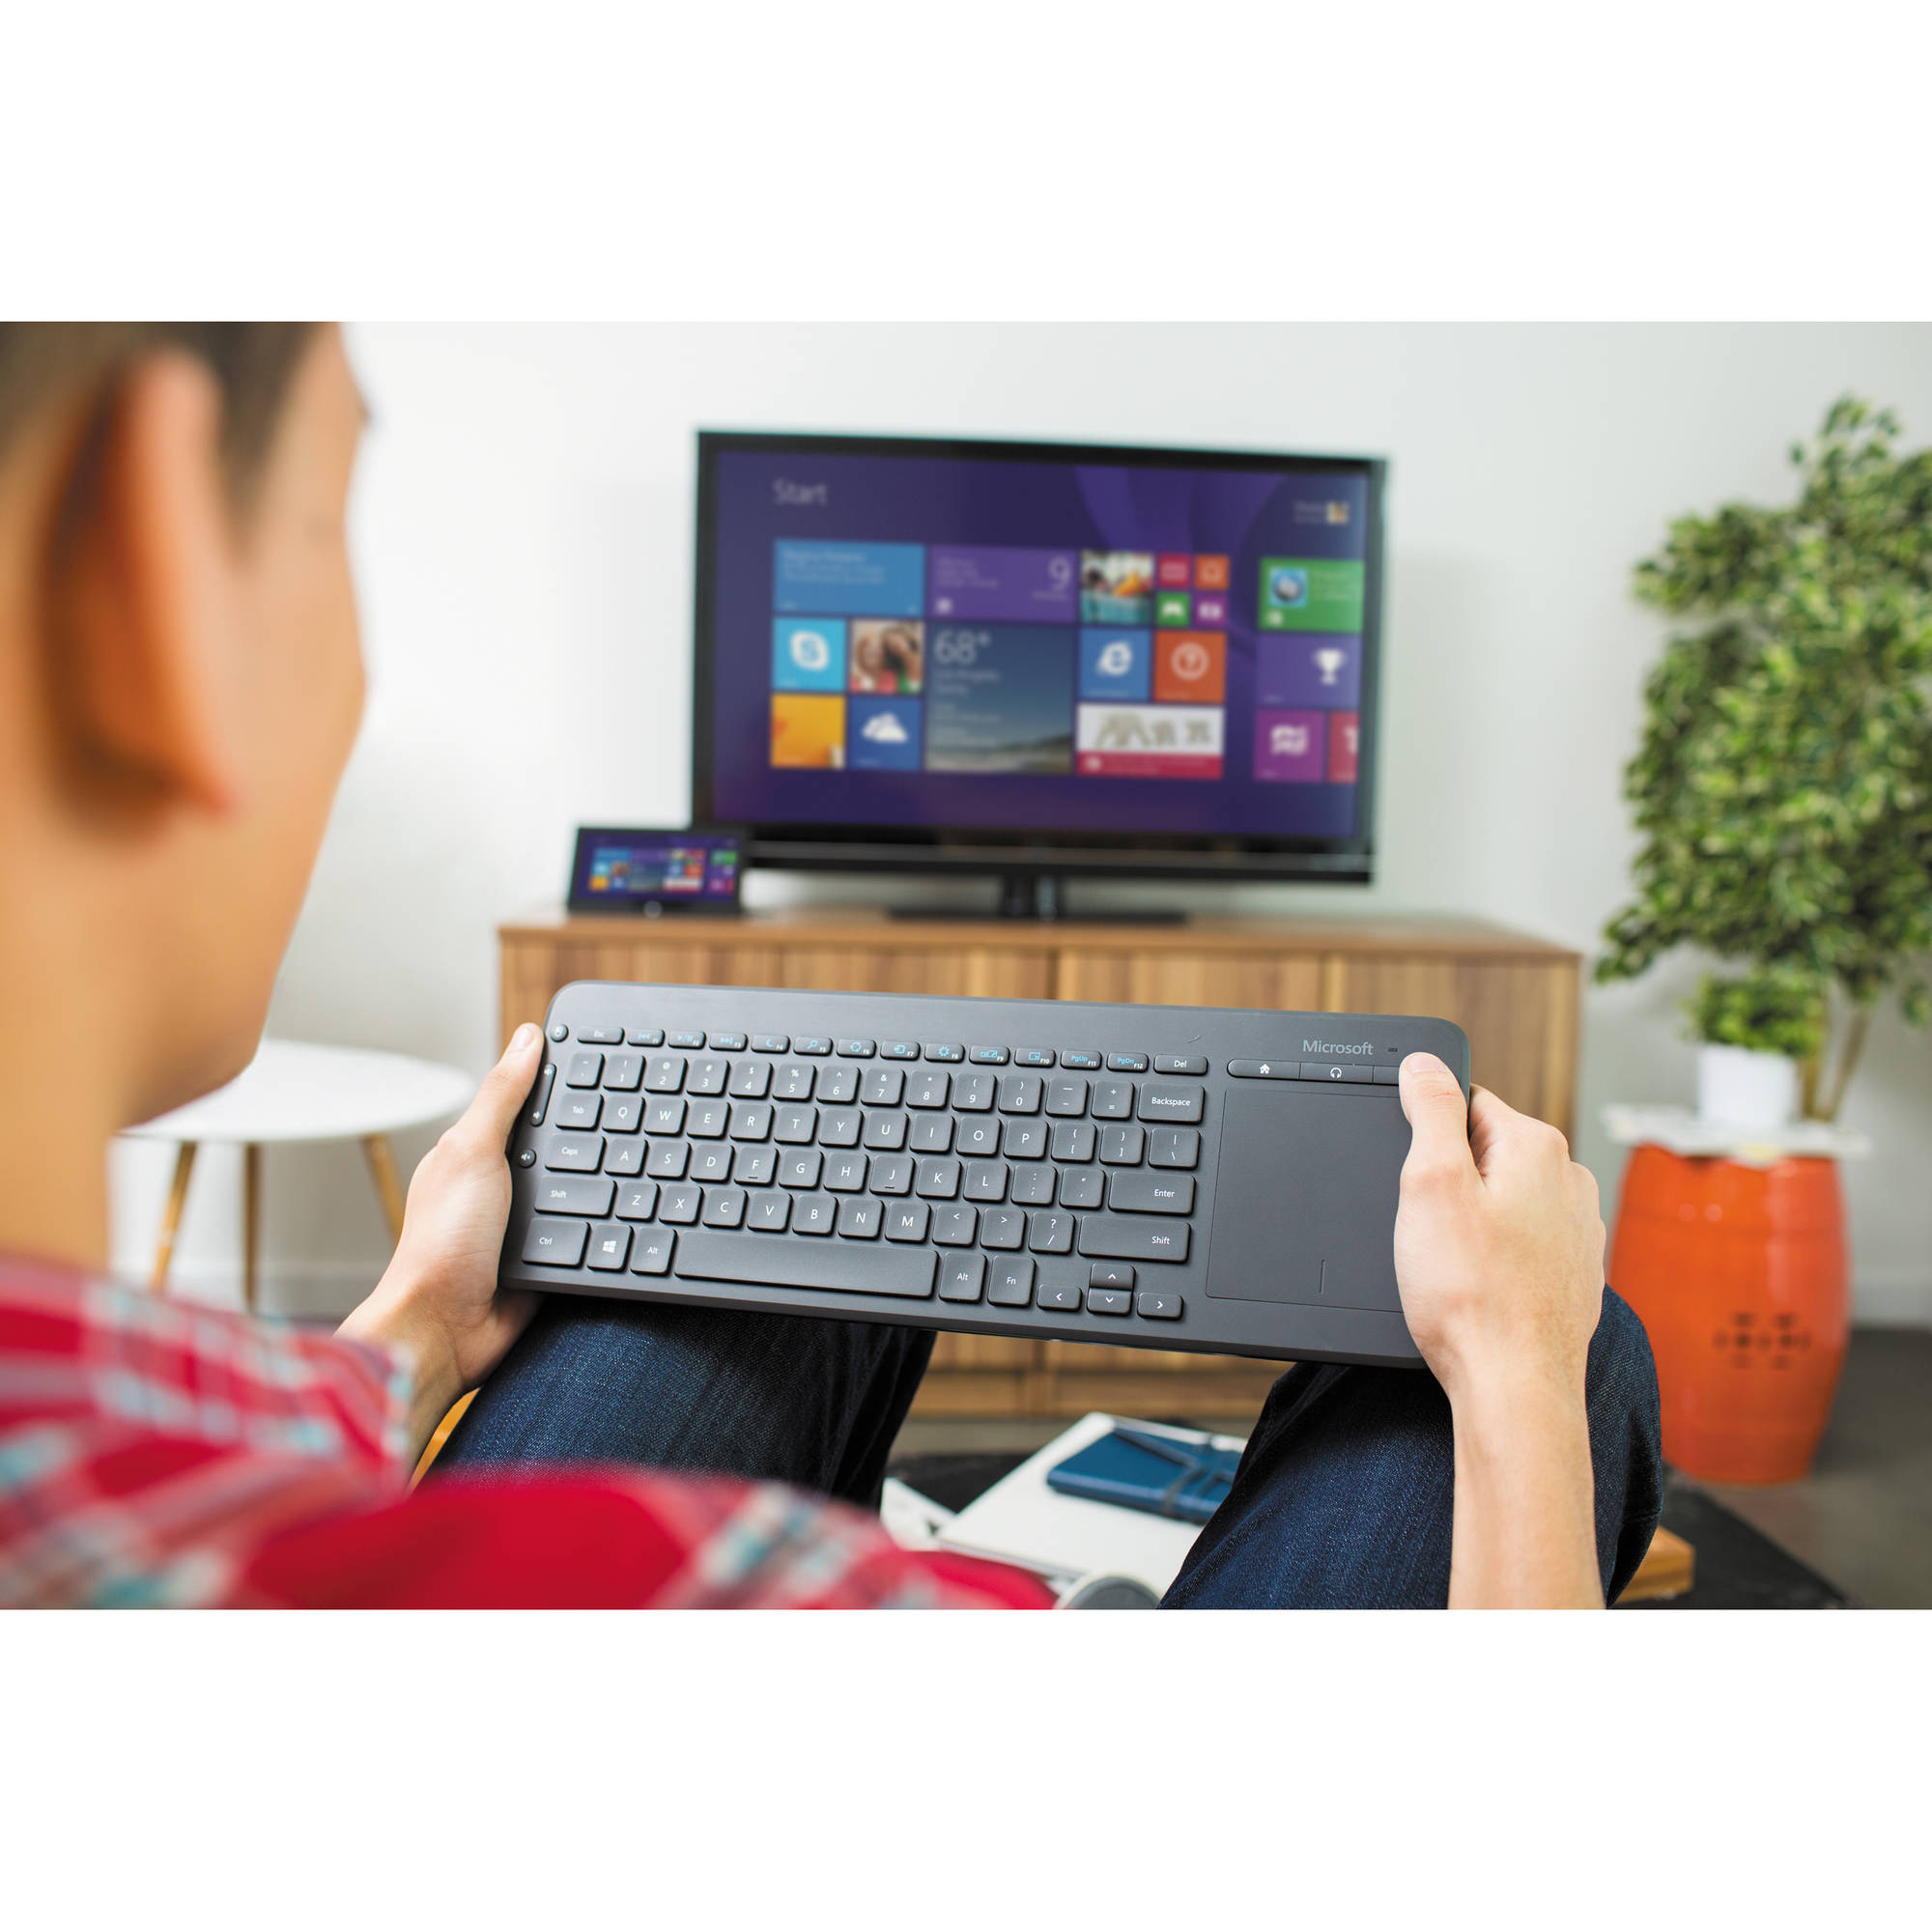 Microsoft All In One Media Keyboard N9z B H Photo Video